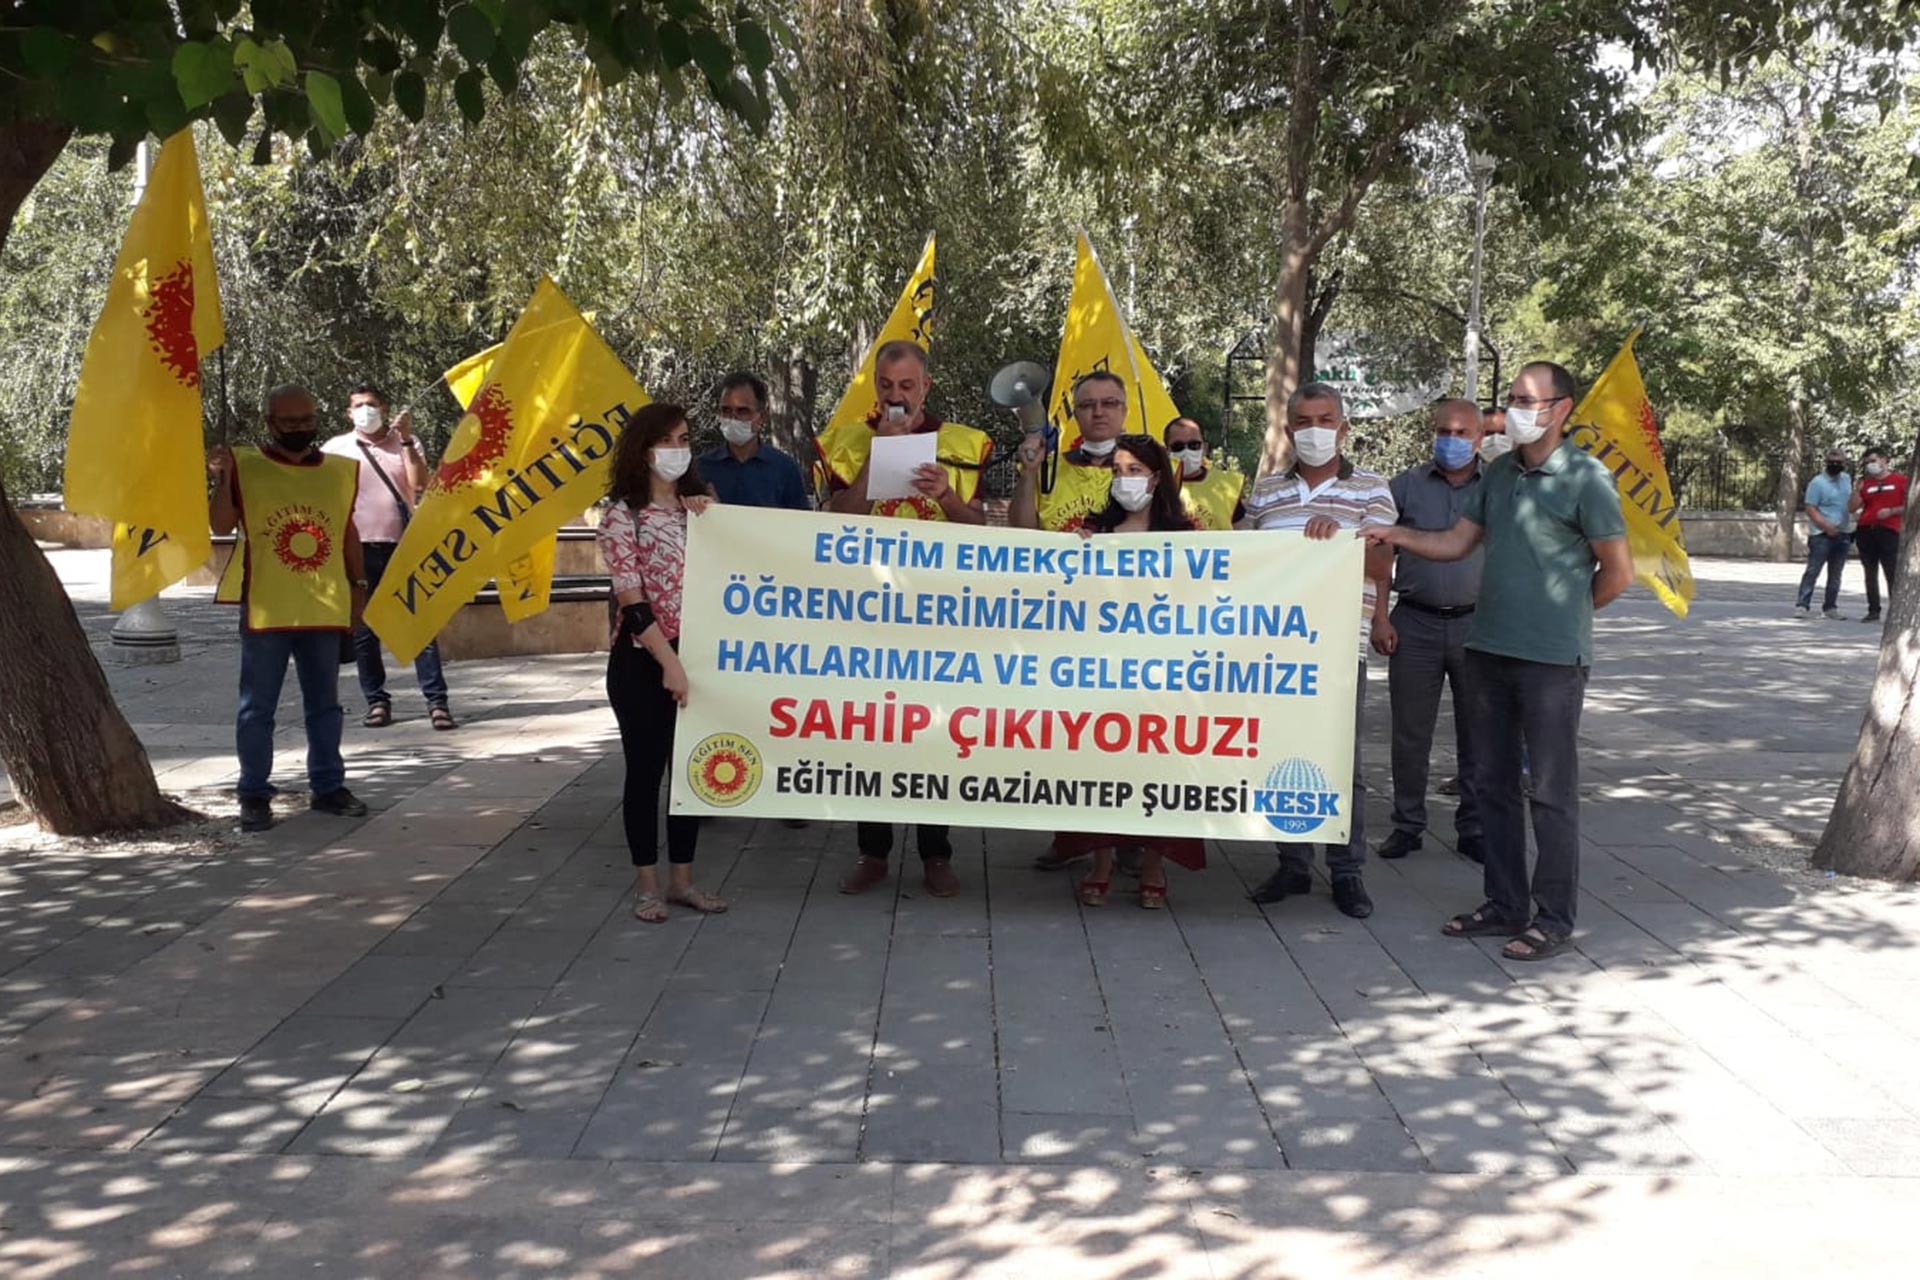 Eğitim Sen Gaziantep Şubesi üyeleri basın açıklaması yapıyor